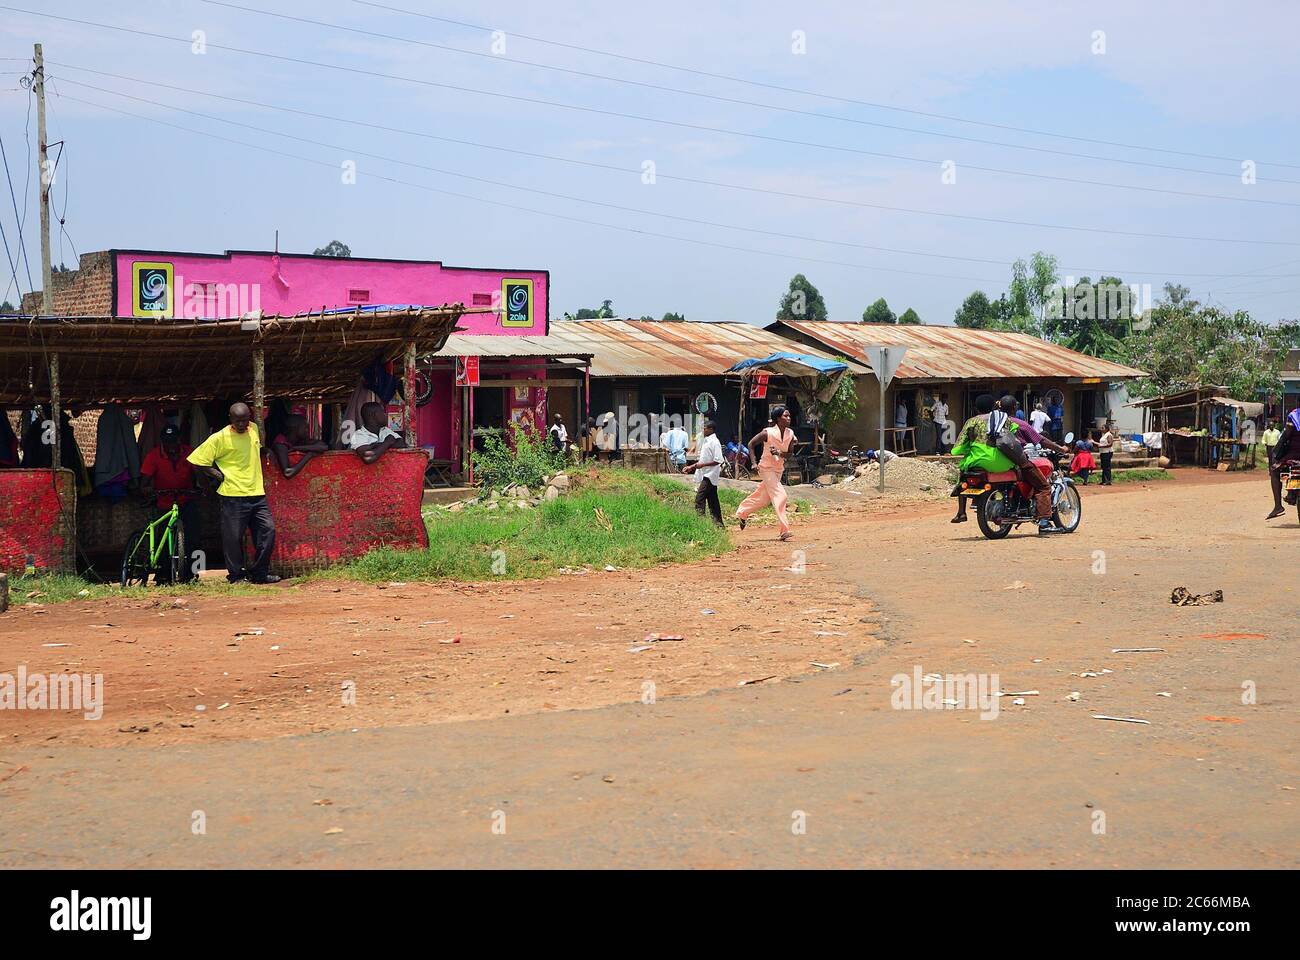 Uganda - 30 agosto 2010: Scena stradale in Uganda centrale. Quasi il 40% degli abitanti locali ha un reddito mensile di appena 2500 scellini in meno di un dollaro Foto Stock